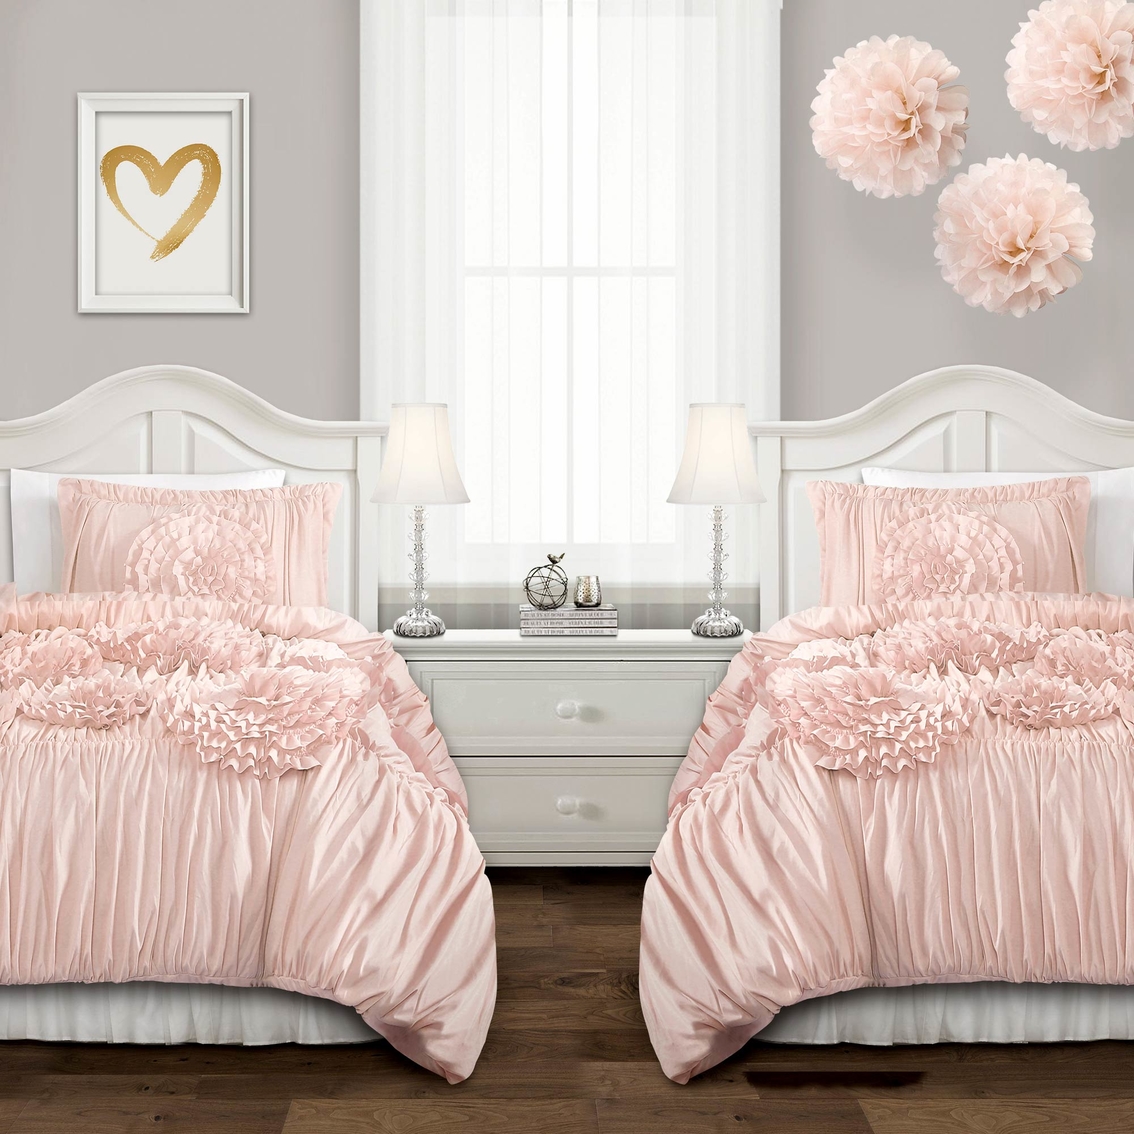 Lush Decor Serena Comforter Set | Bedding Sets | Back To School Shop ...